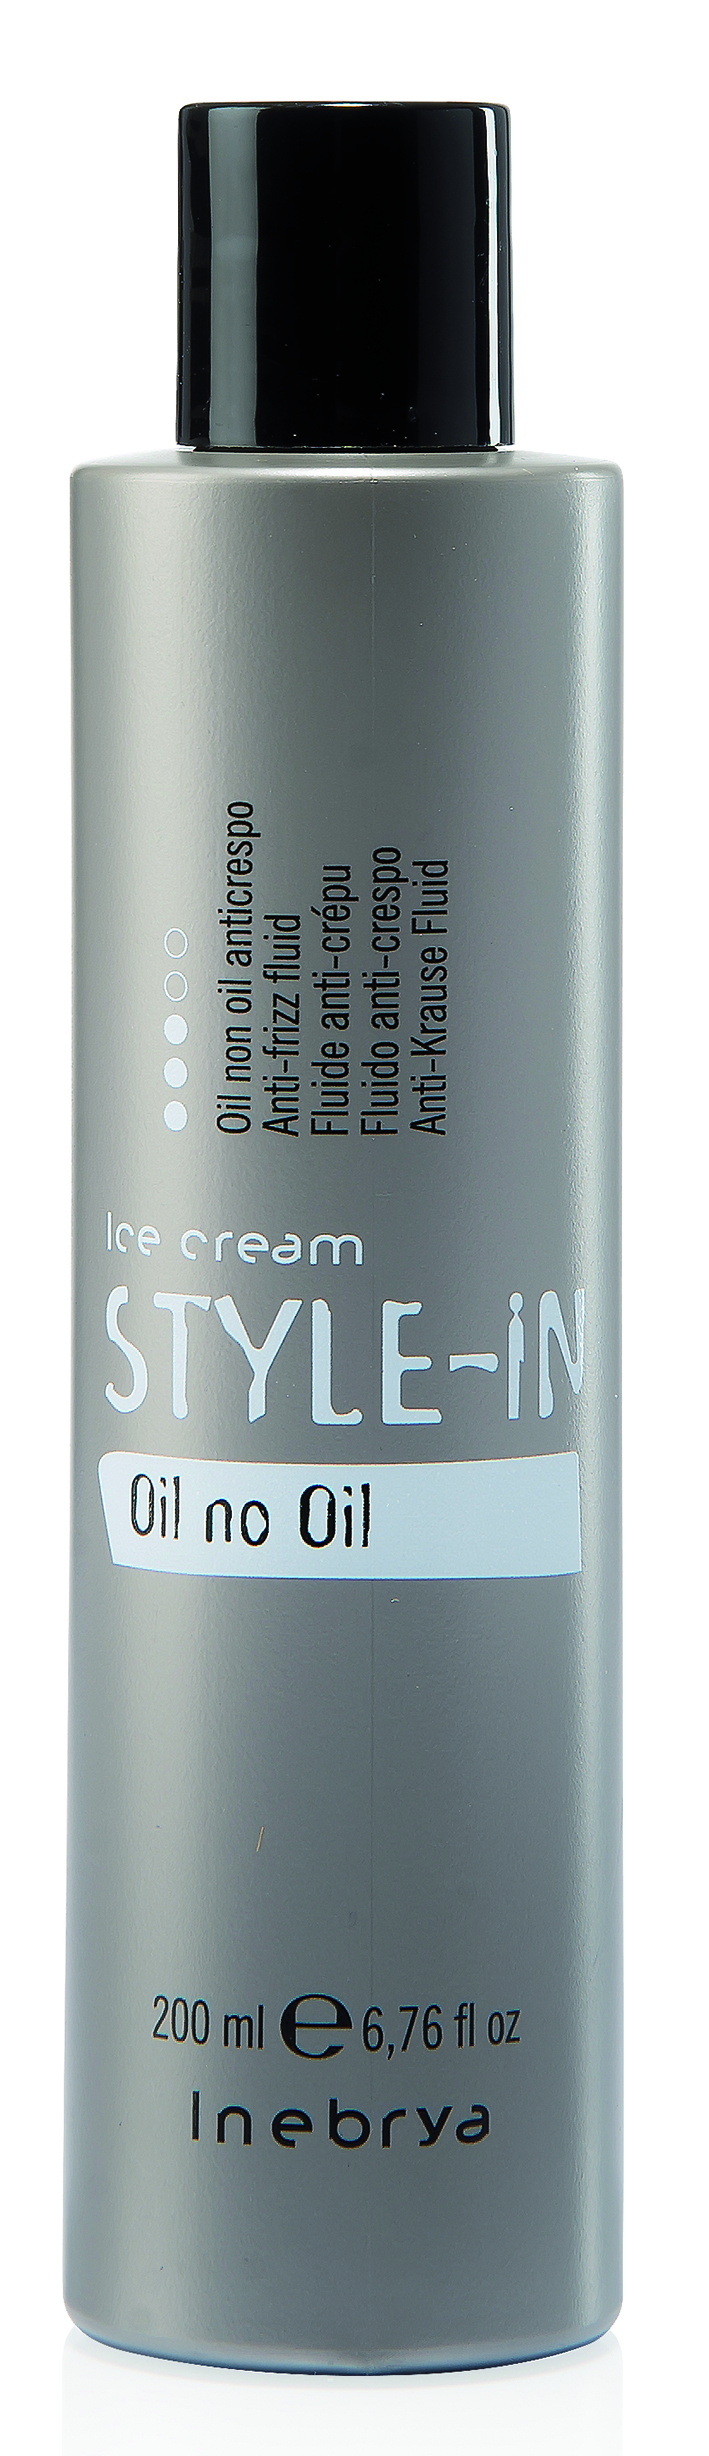 Style in Oil no Oil, 200 ml